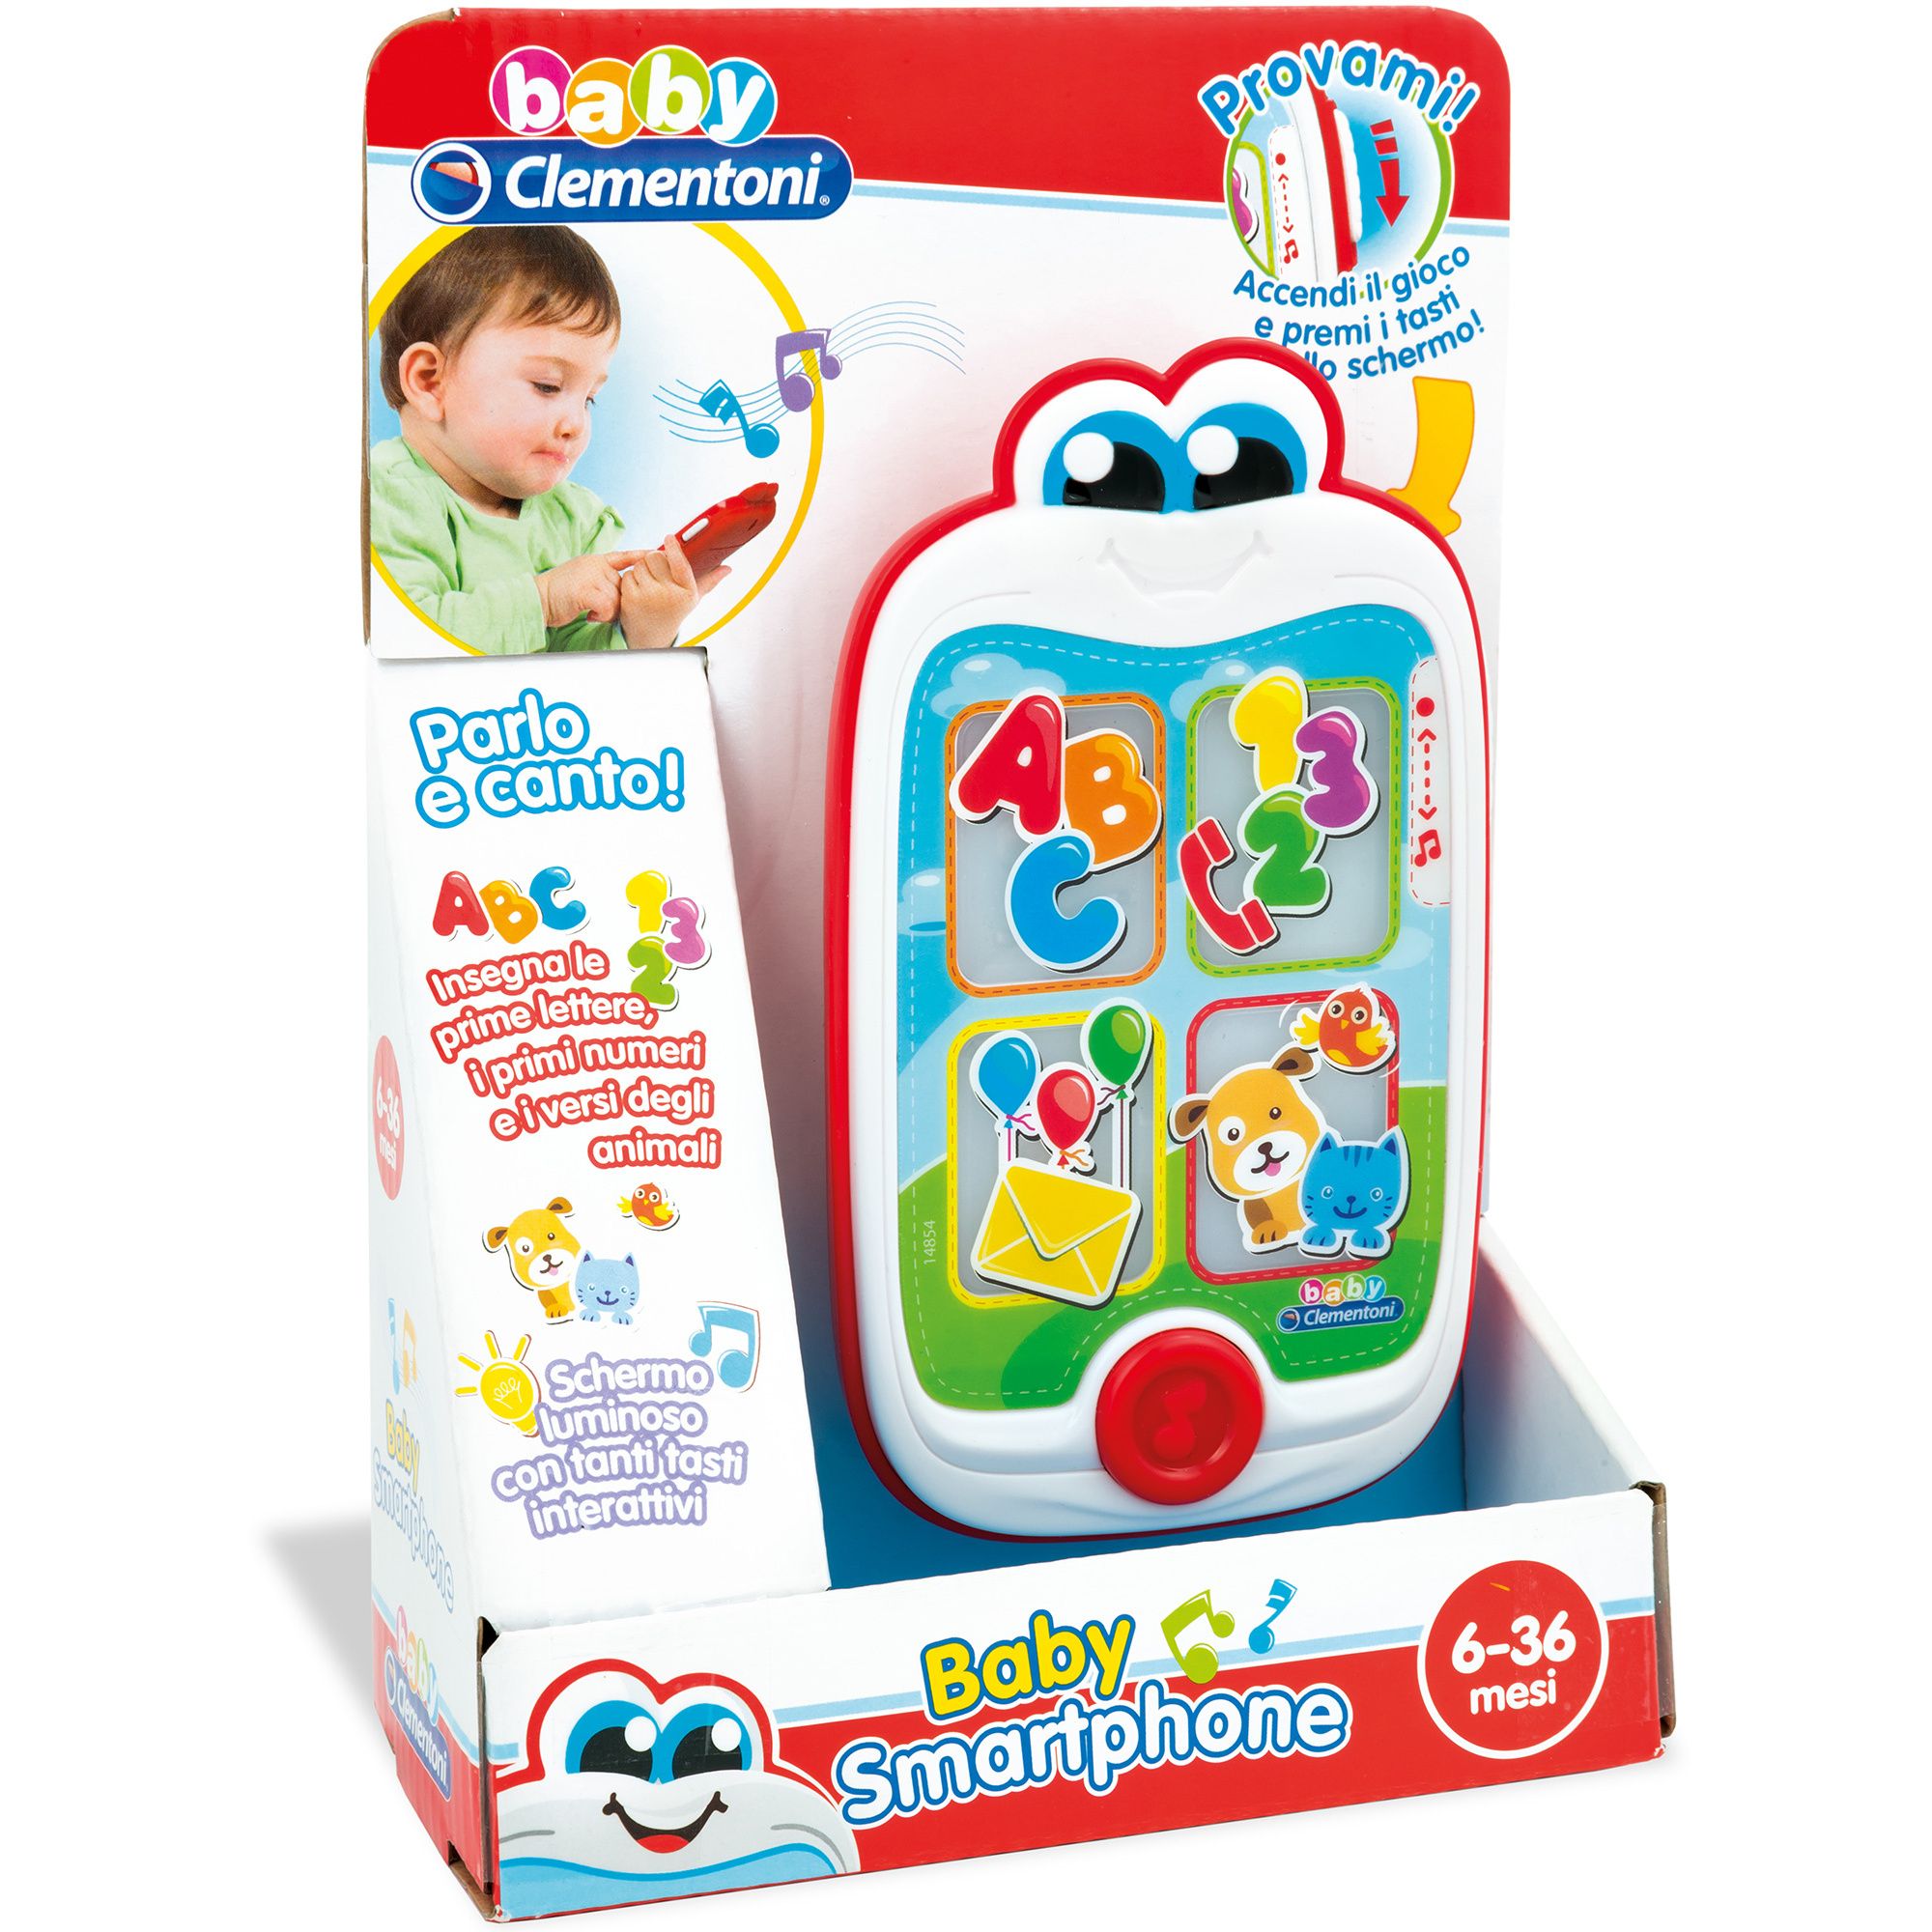 Baby clementoni - baby smartphone - Baby Clementoni